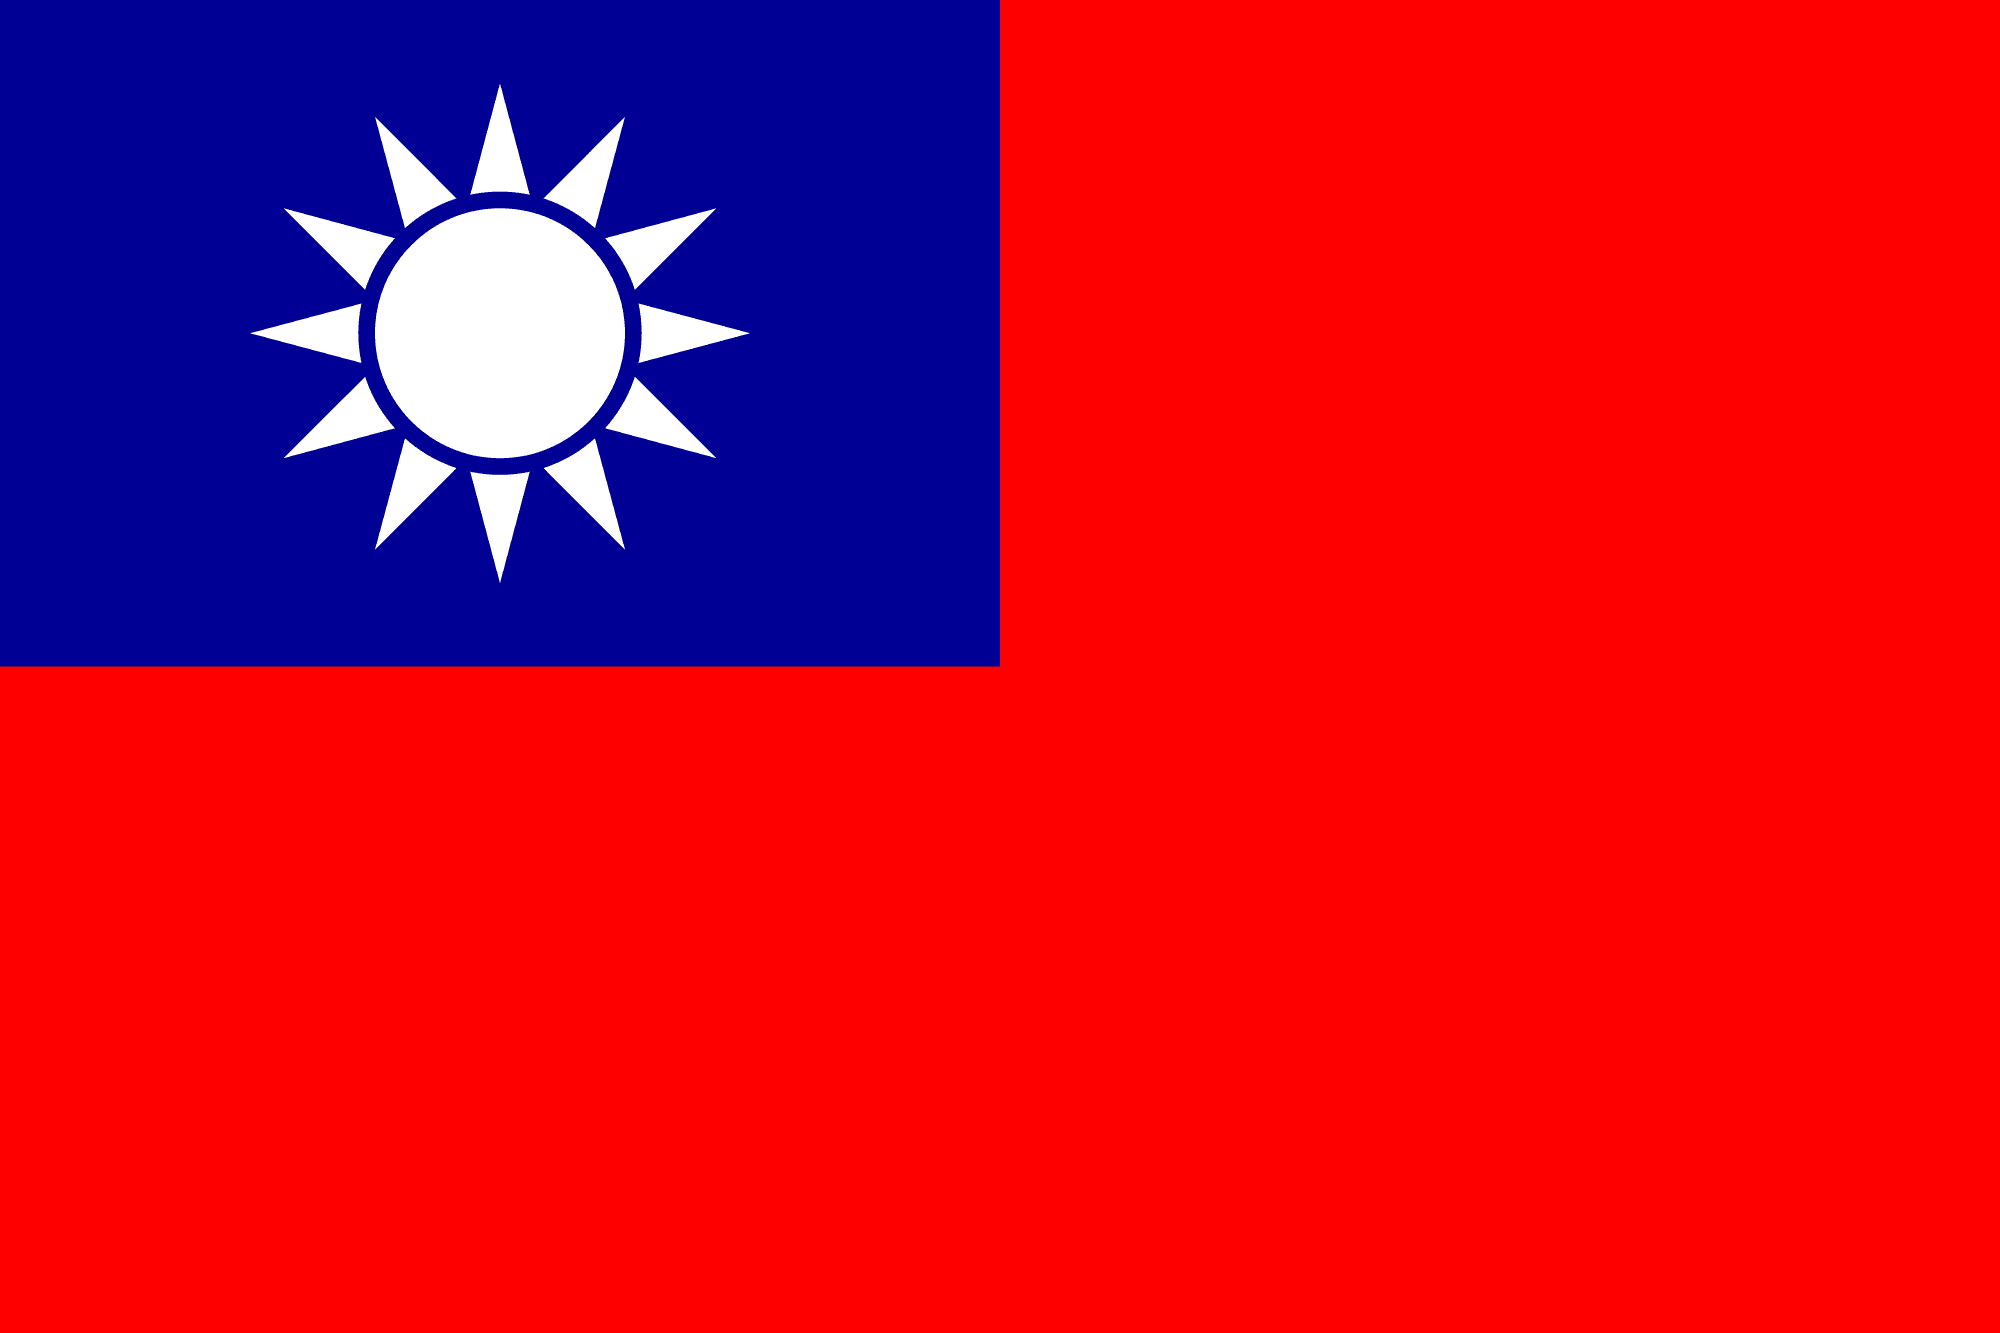 中華民國國旗 Republic of China National Flag